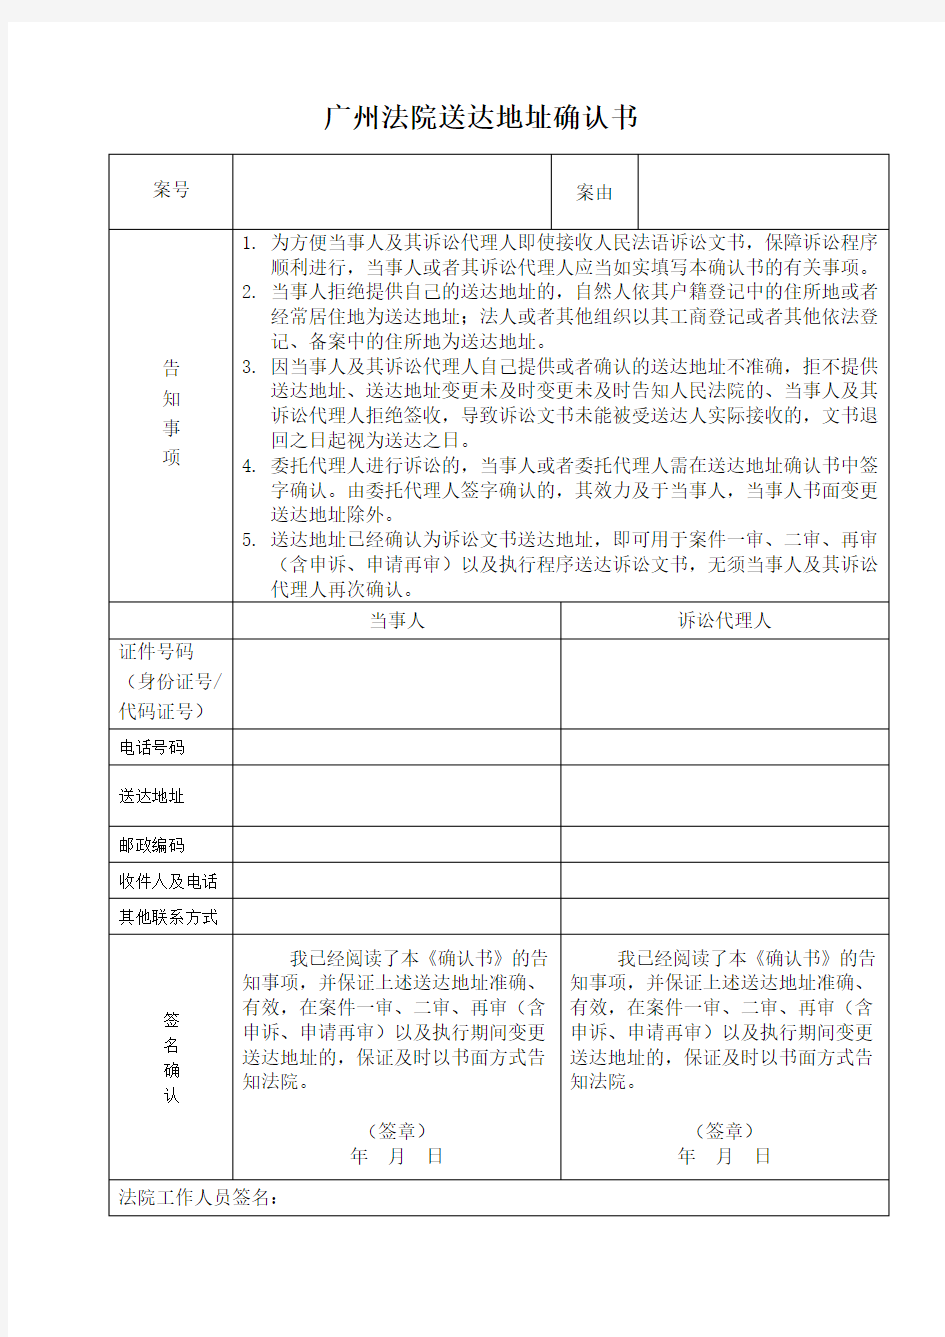 (完整版)广州法院送达地址确认书